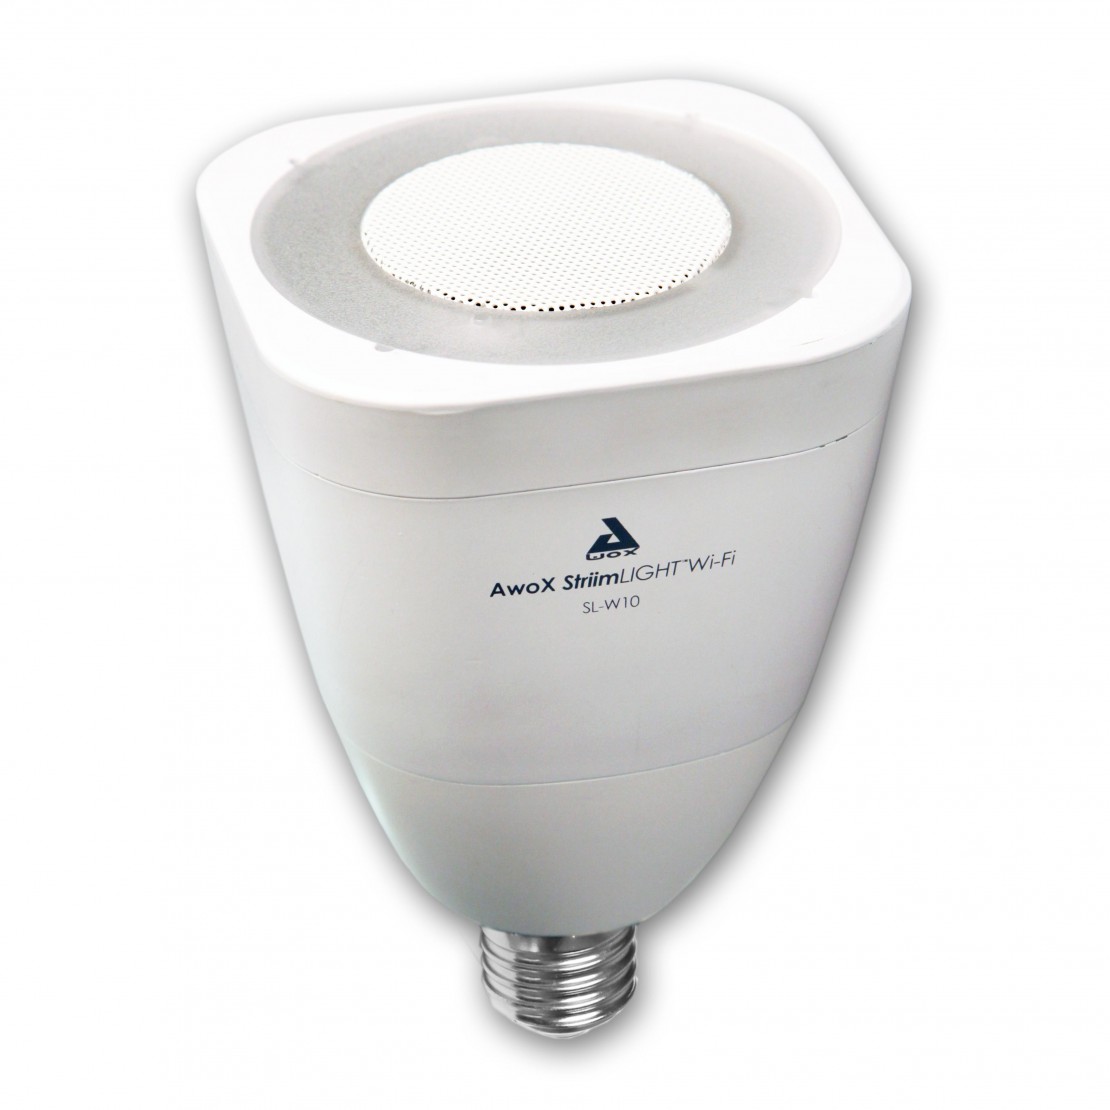 E27 white LED bulb with built-in speaker